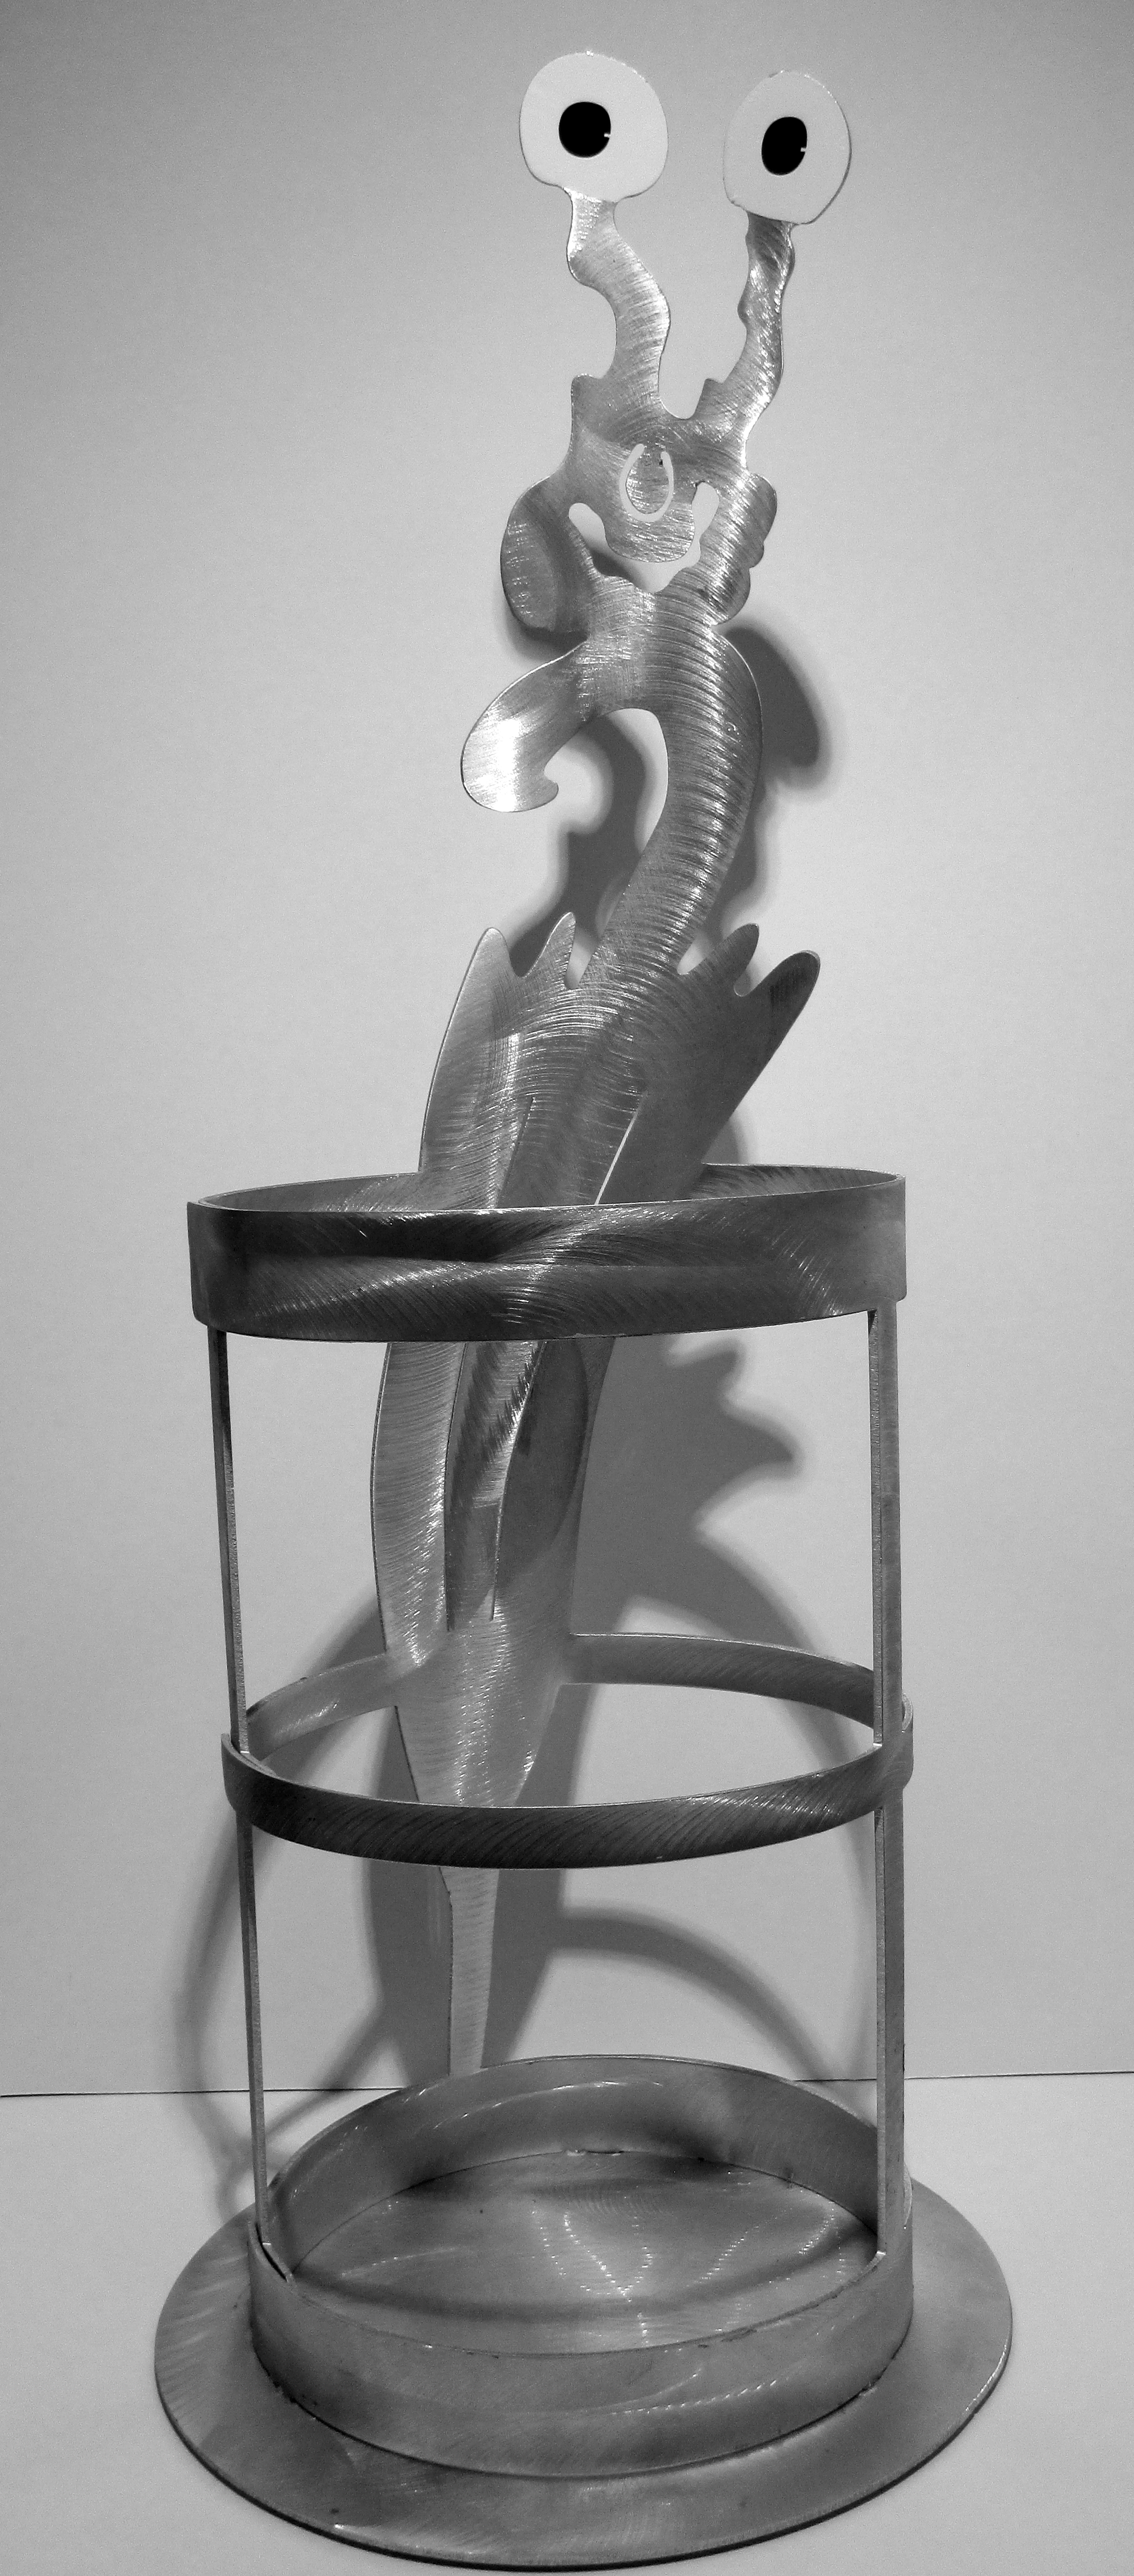 Schirmstaender 3, Metall, Hoehe 81 cm, Durchmesser 30 cm;475 - Galerie Wroblowski